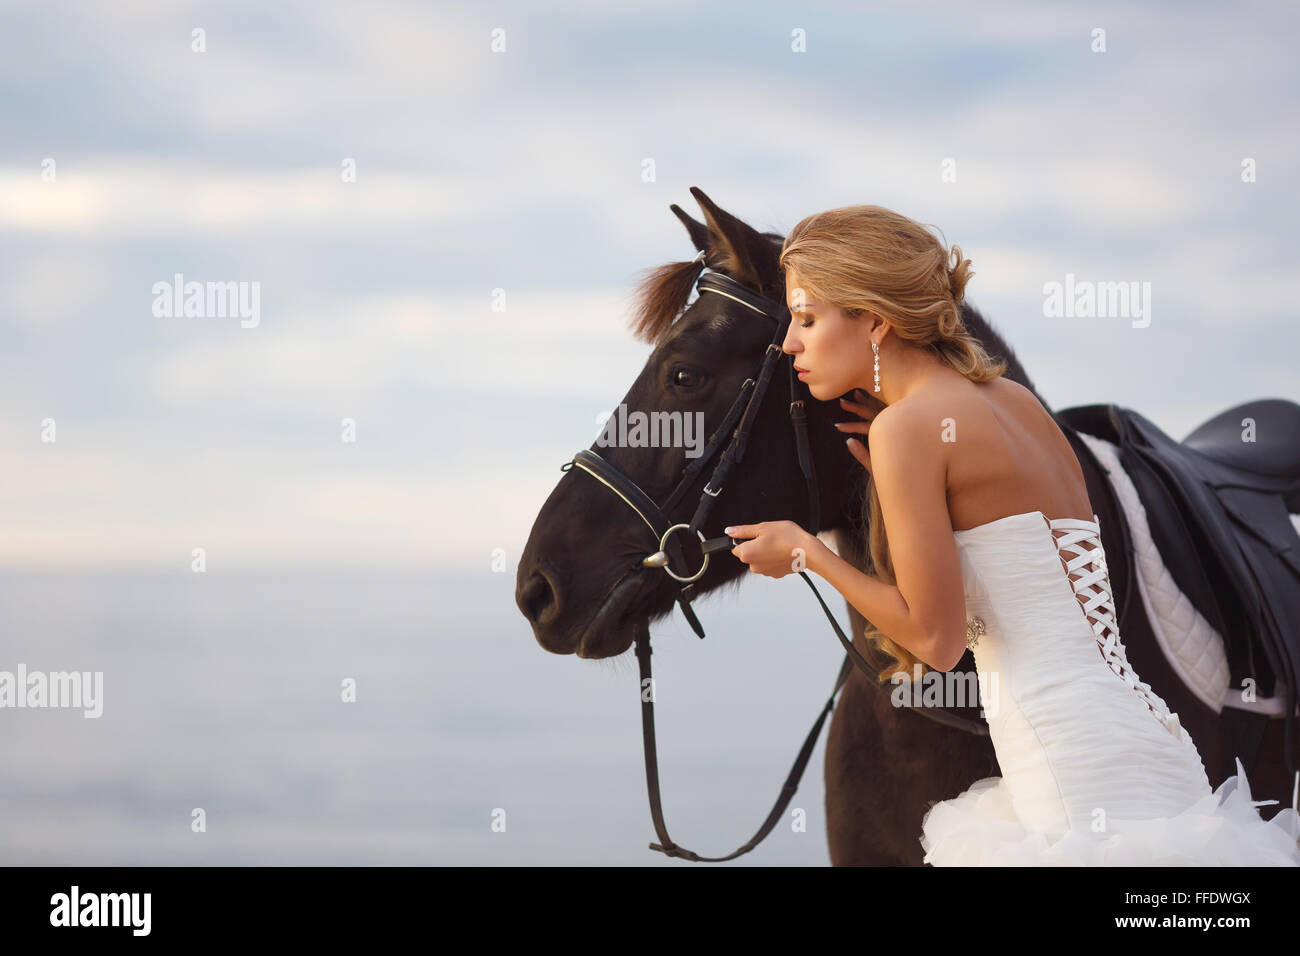 Novia con un caballo por el mar en su día de la boda Foto de stock